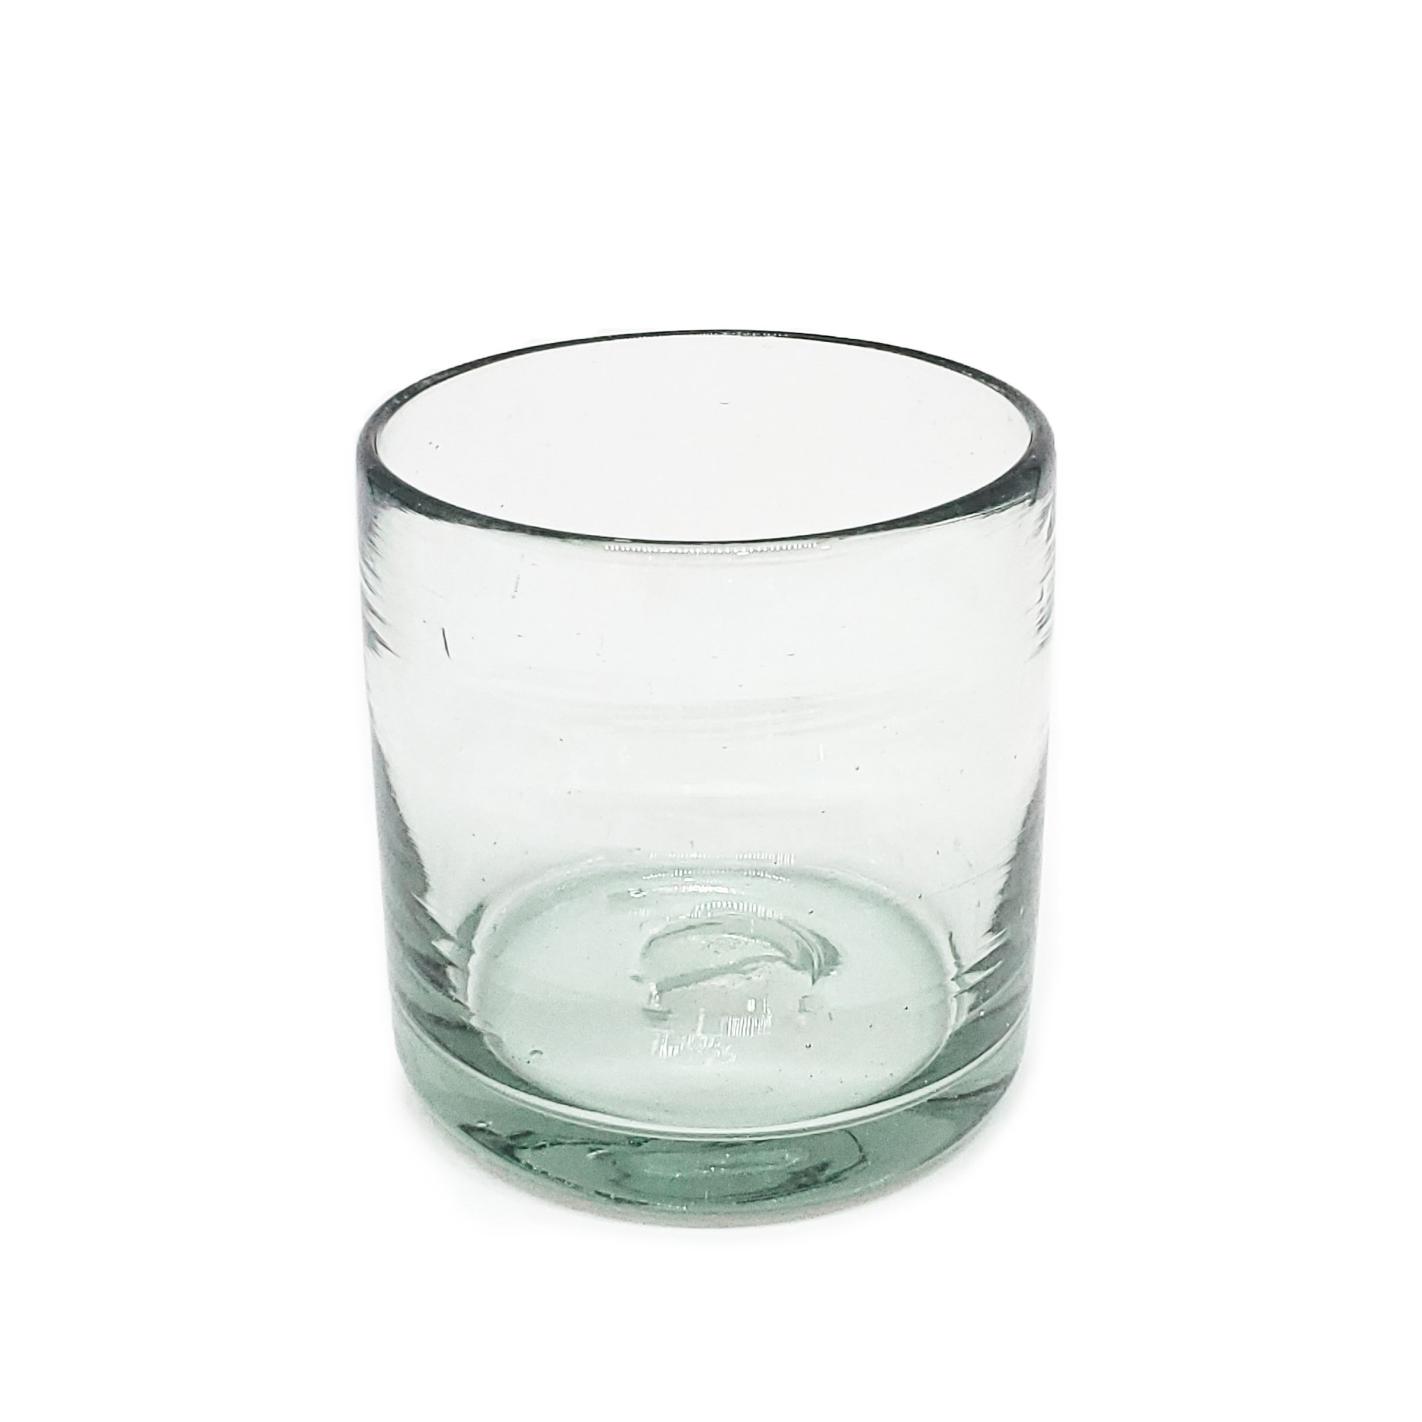 VIDRIO SOPLADO / Juego de 6 vasos DOF 8oz Transparentes / stos artesanales vasos le darn un toque clsico a su bebida favorita.